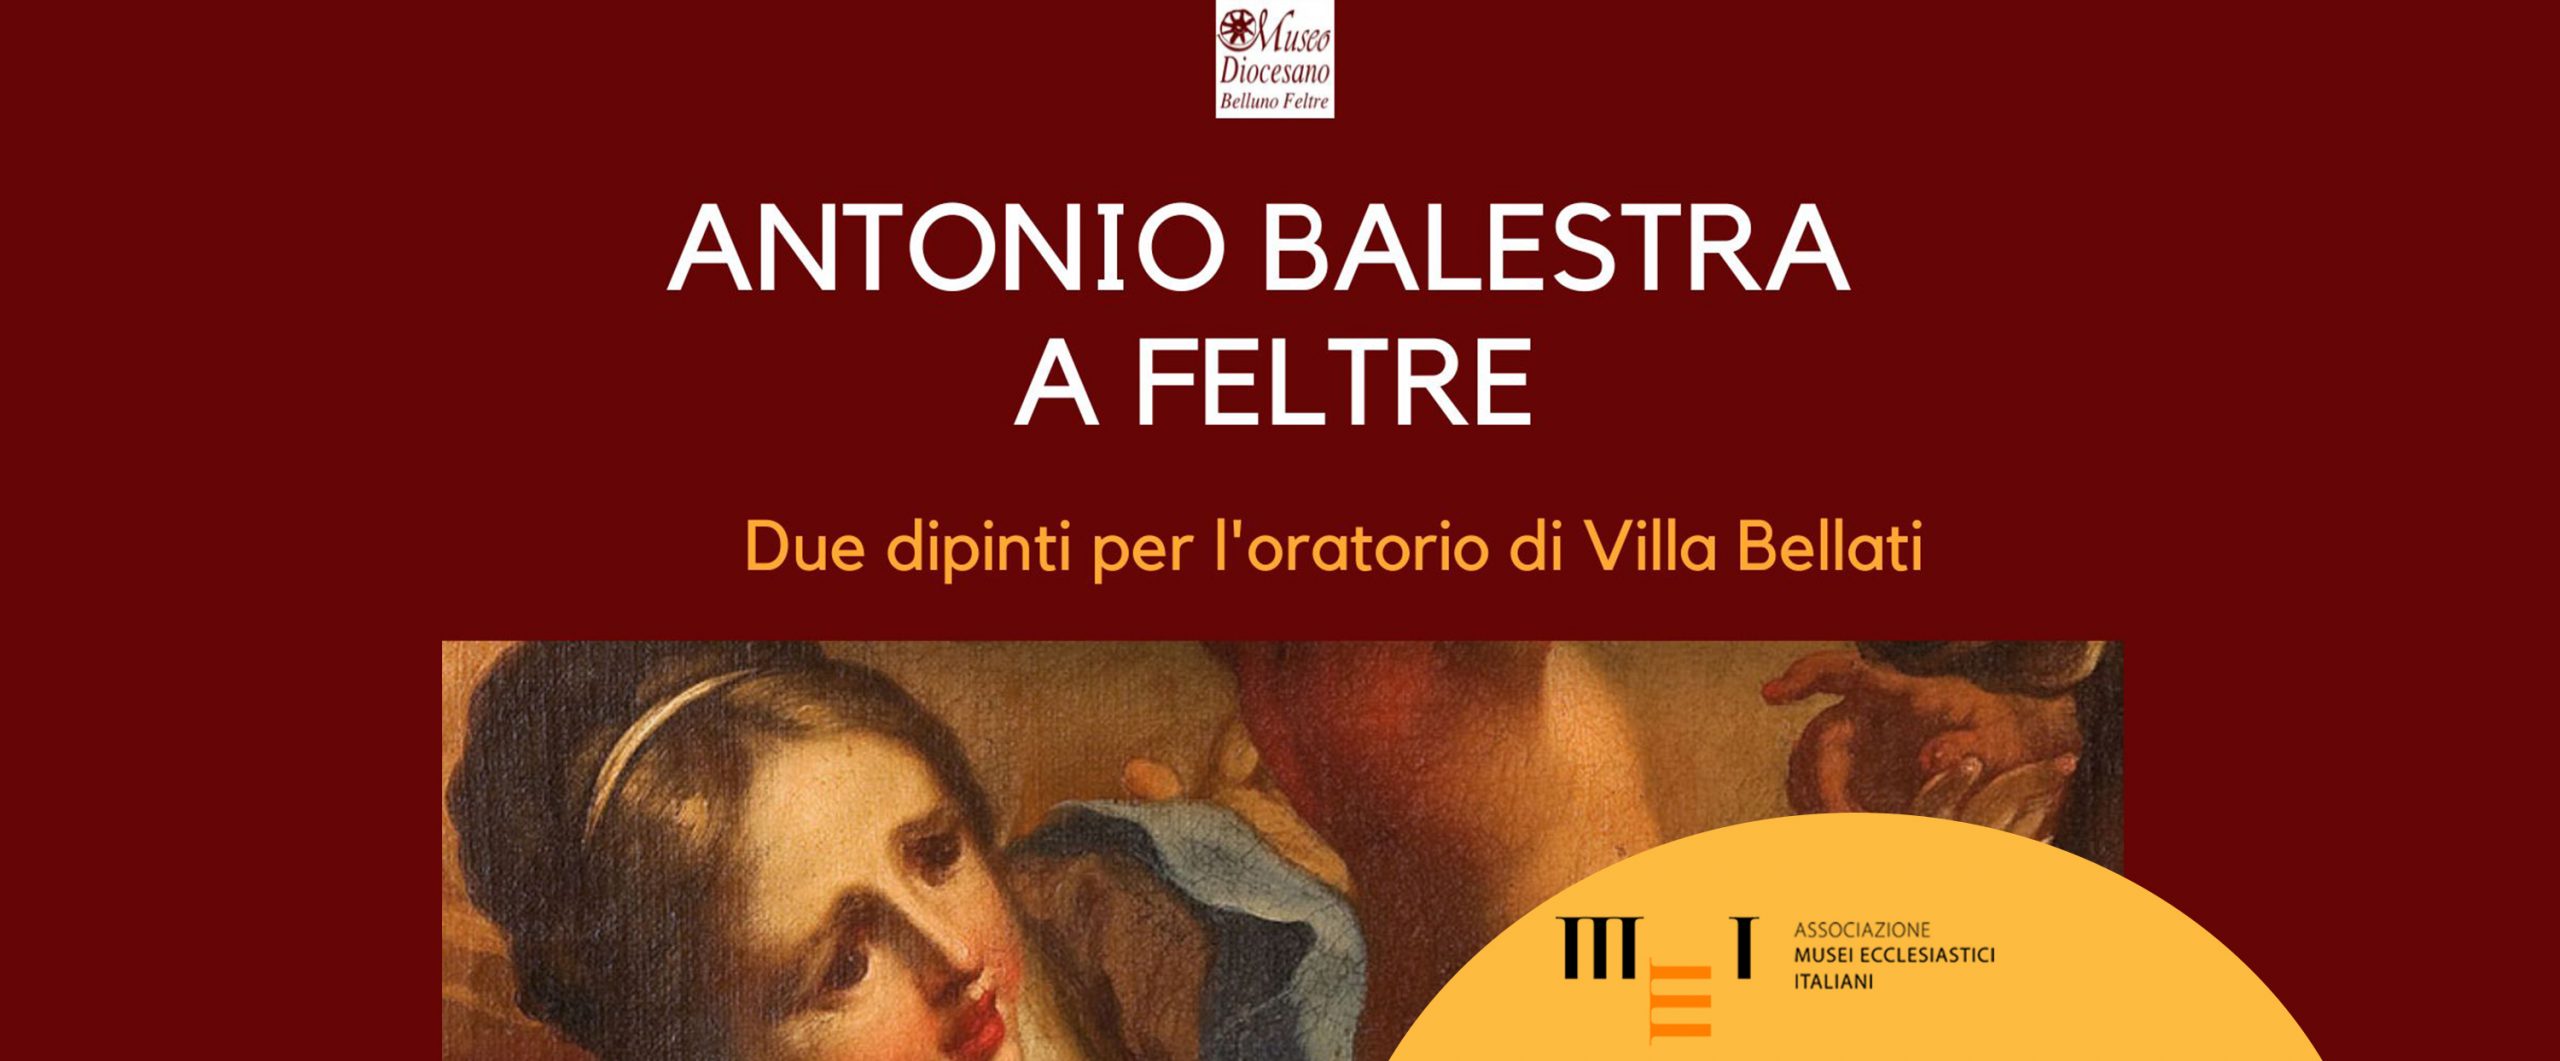 Antonio Balestra a Feltre -12 maggio 2023 Museo Diocesano Belluno Feltre_AMEI